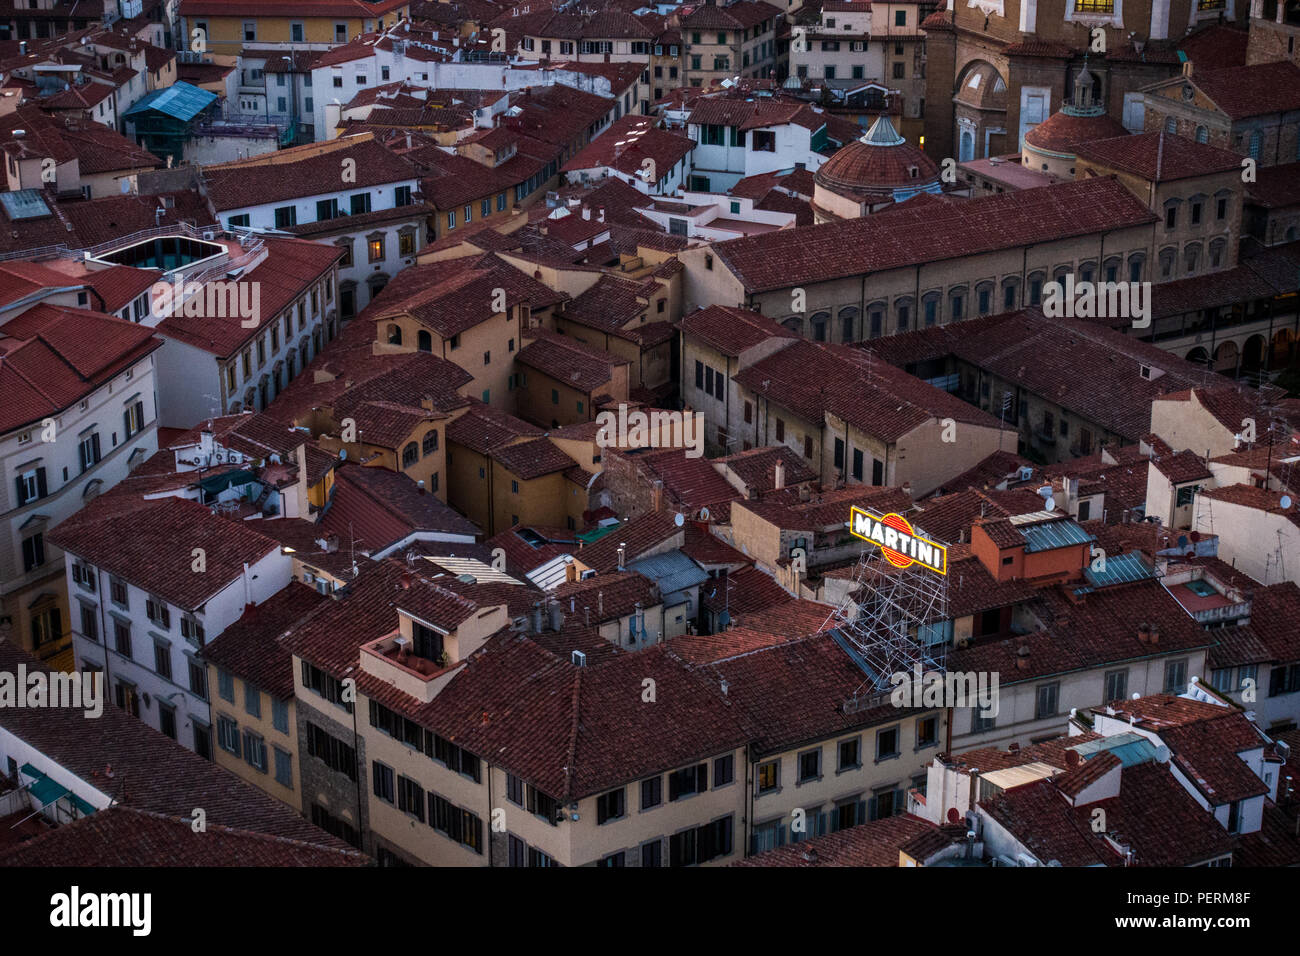 Florenz, Italien - 23. März 2018: Eine moderne Leuchtreklame steht auf einem Dach unter eng traditionelle mittelalterliche und Renaissance buildi Bauen Stockfoto